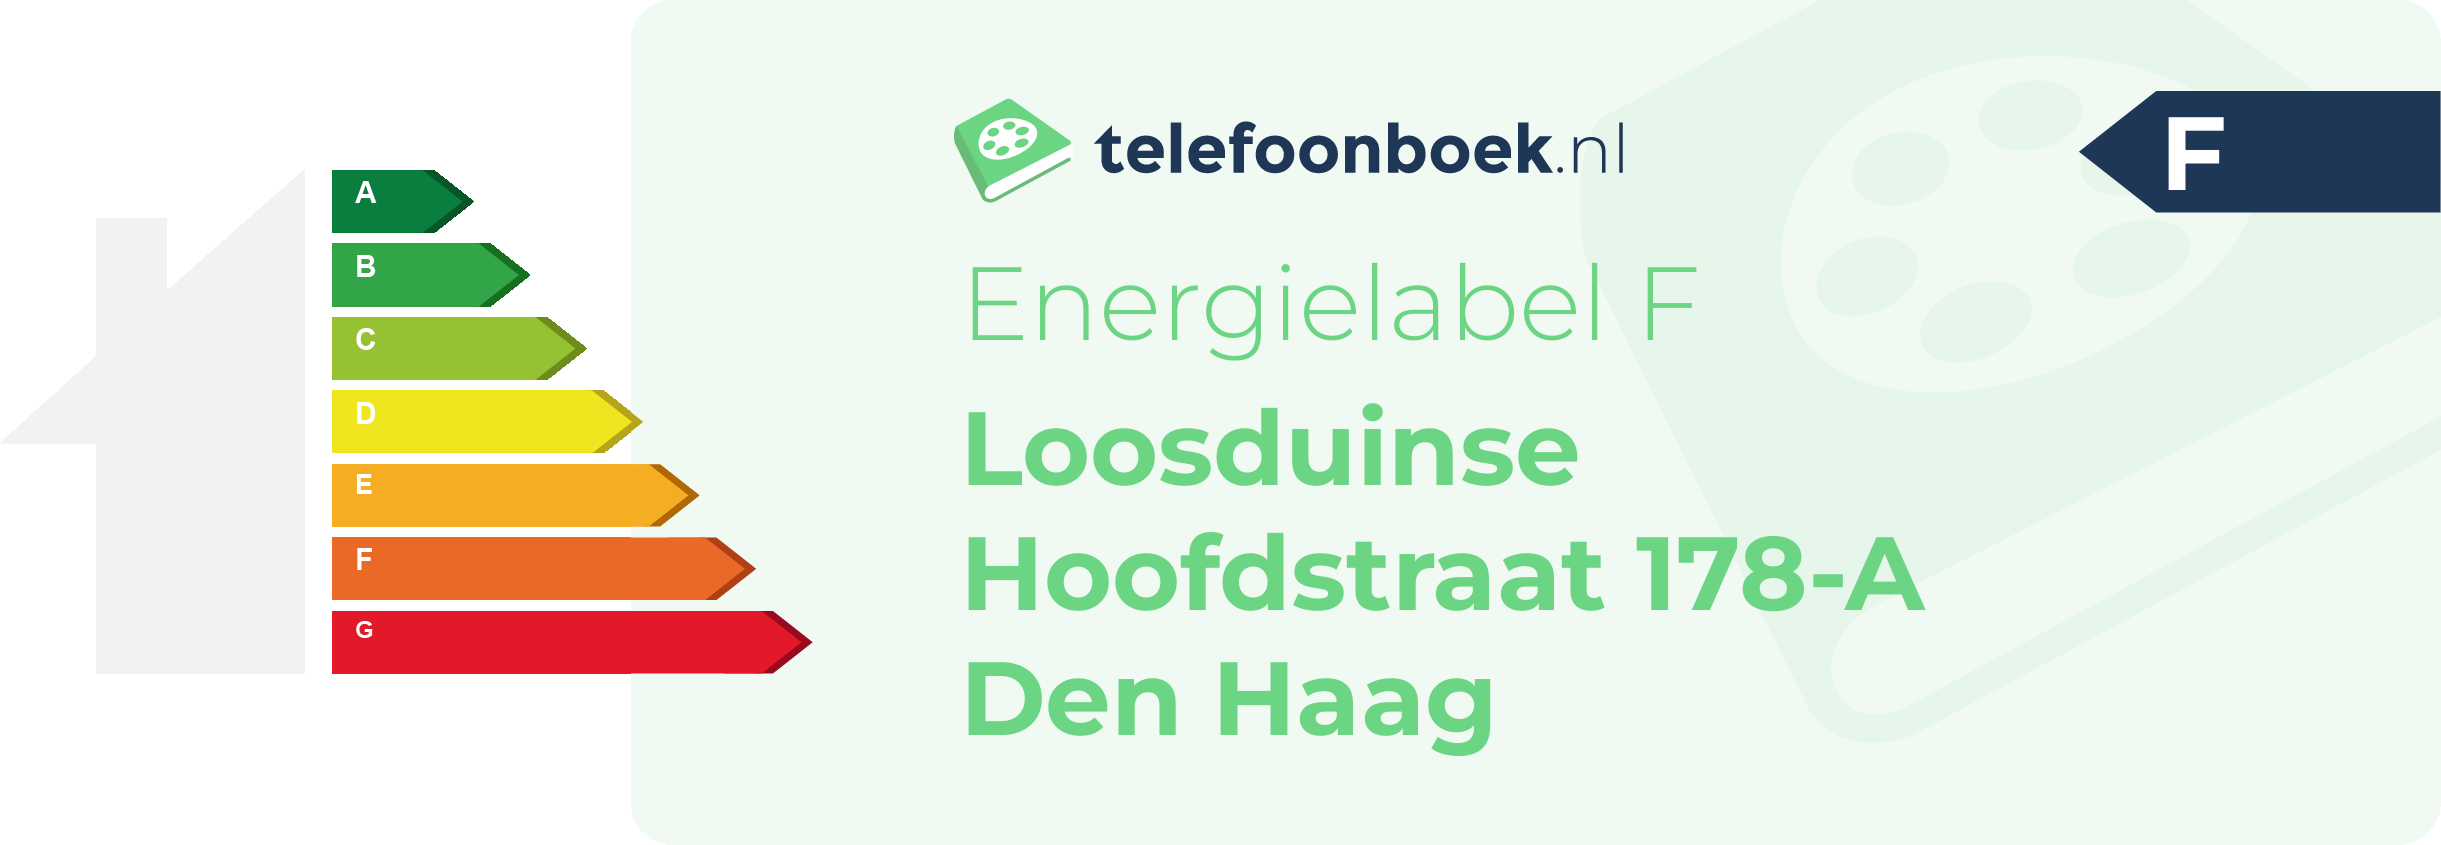 Energielabel Loosduinse Hoofdstraat 178-A Den Haag